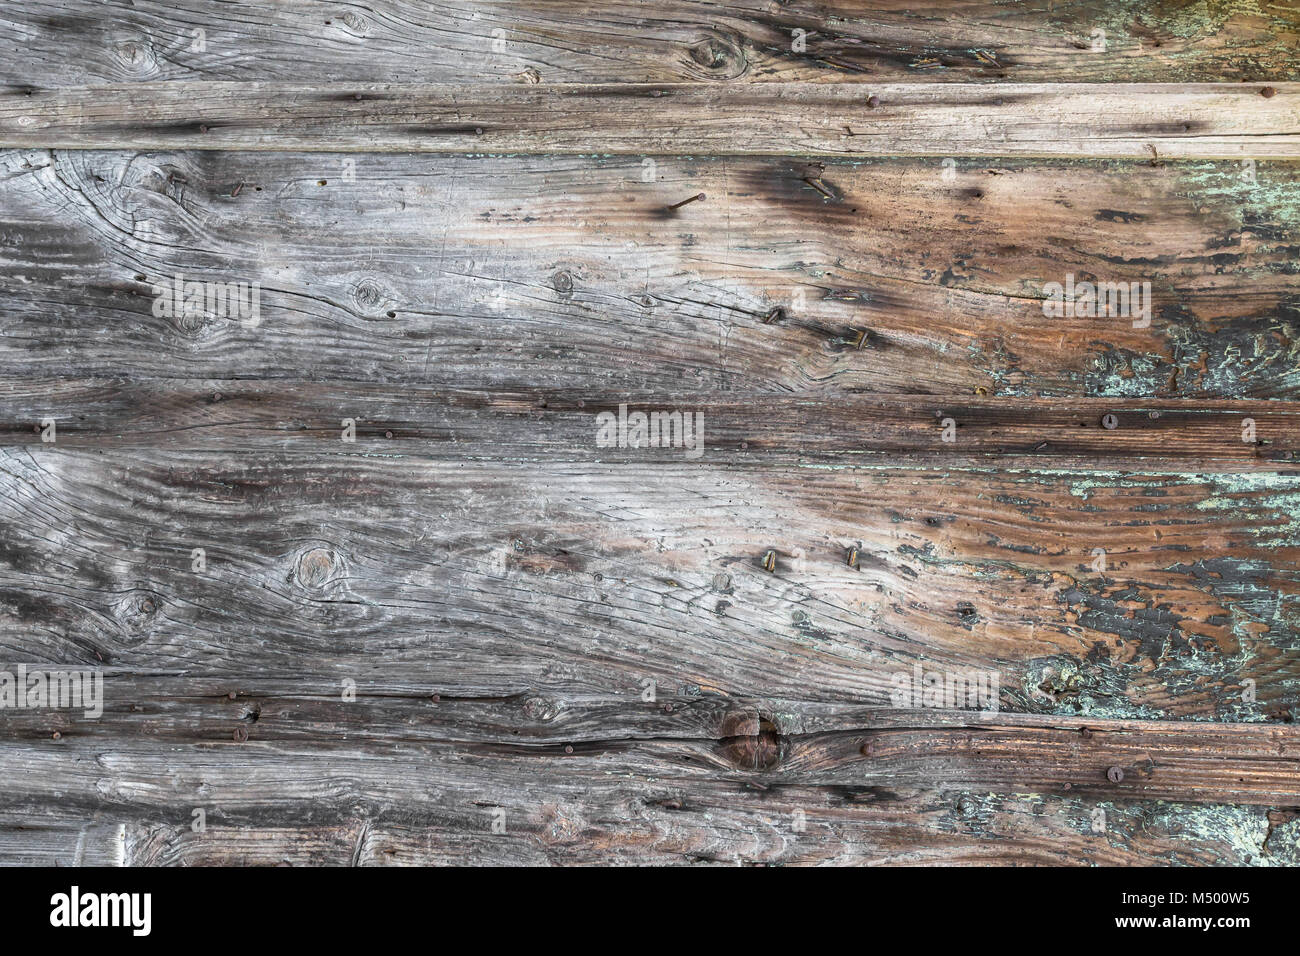 Weathered wood background Stock Photo